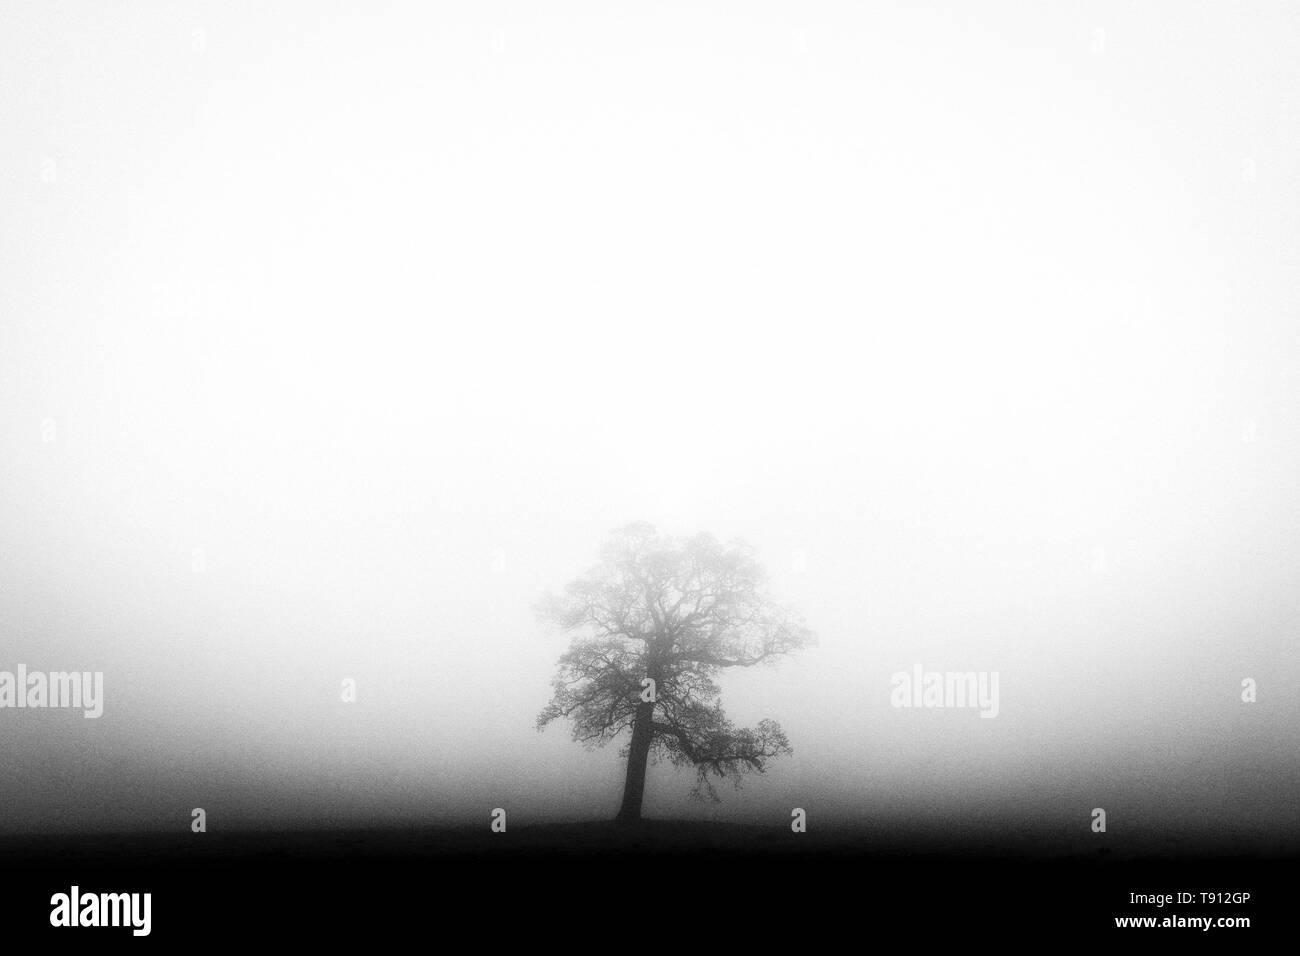 Seul arbre dans le brouillard, en noir et blanc, effet film pour mettre en évidence la profondeur du brouillard dans le champ derrière. Banque D'Images